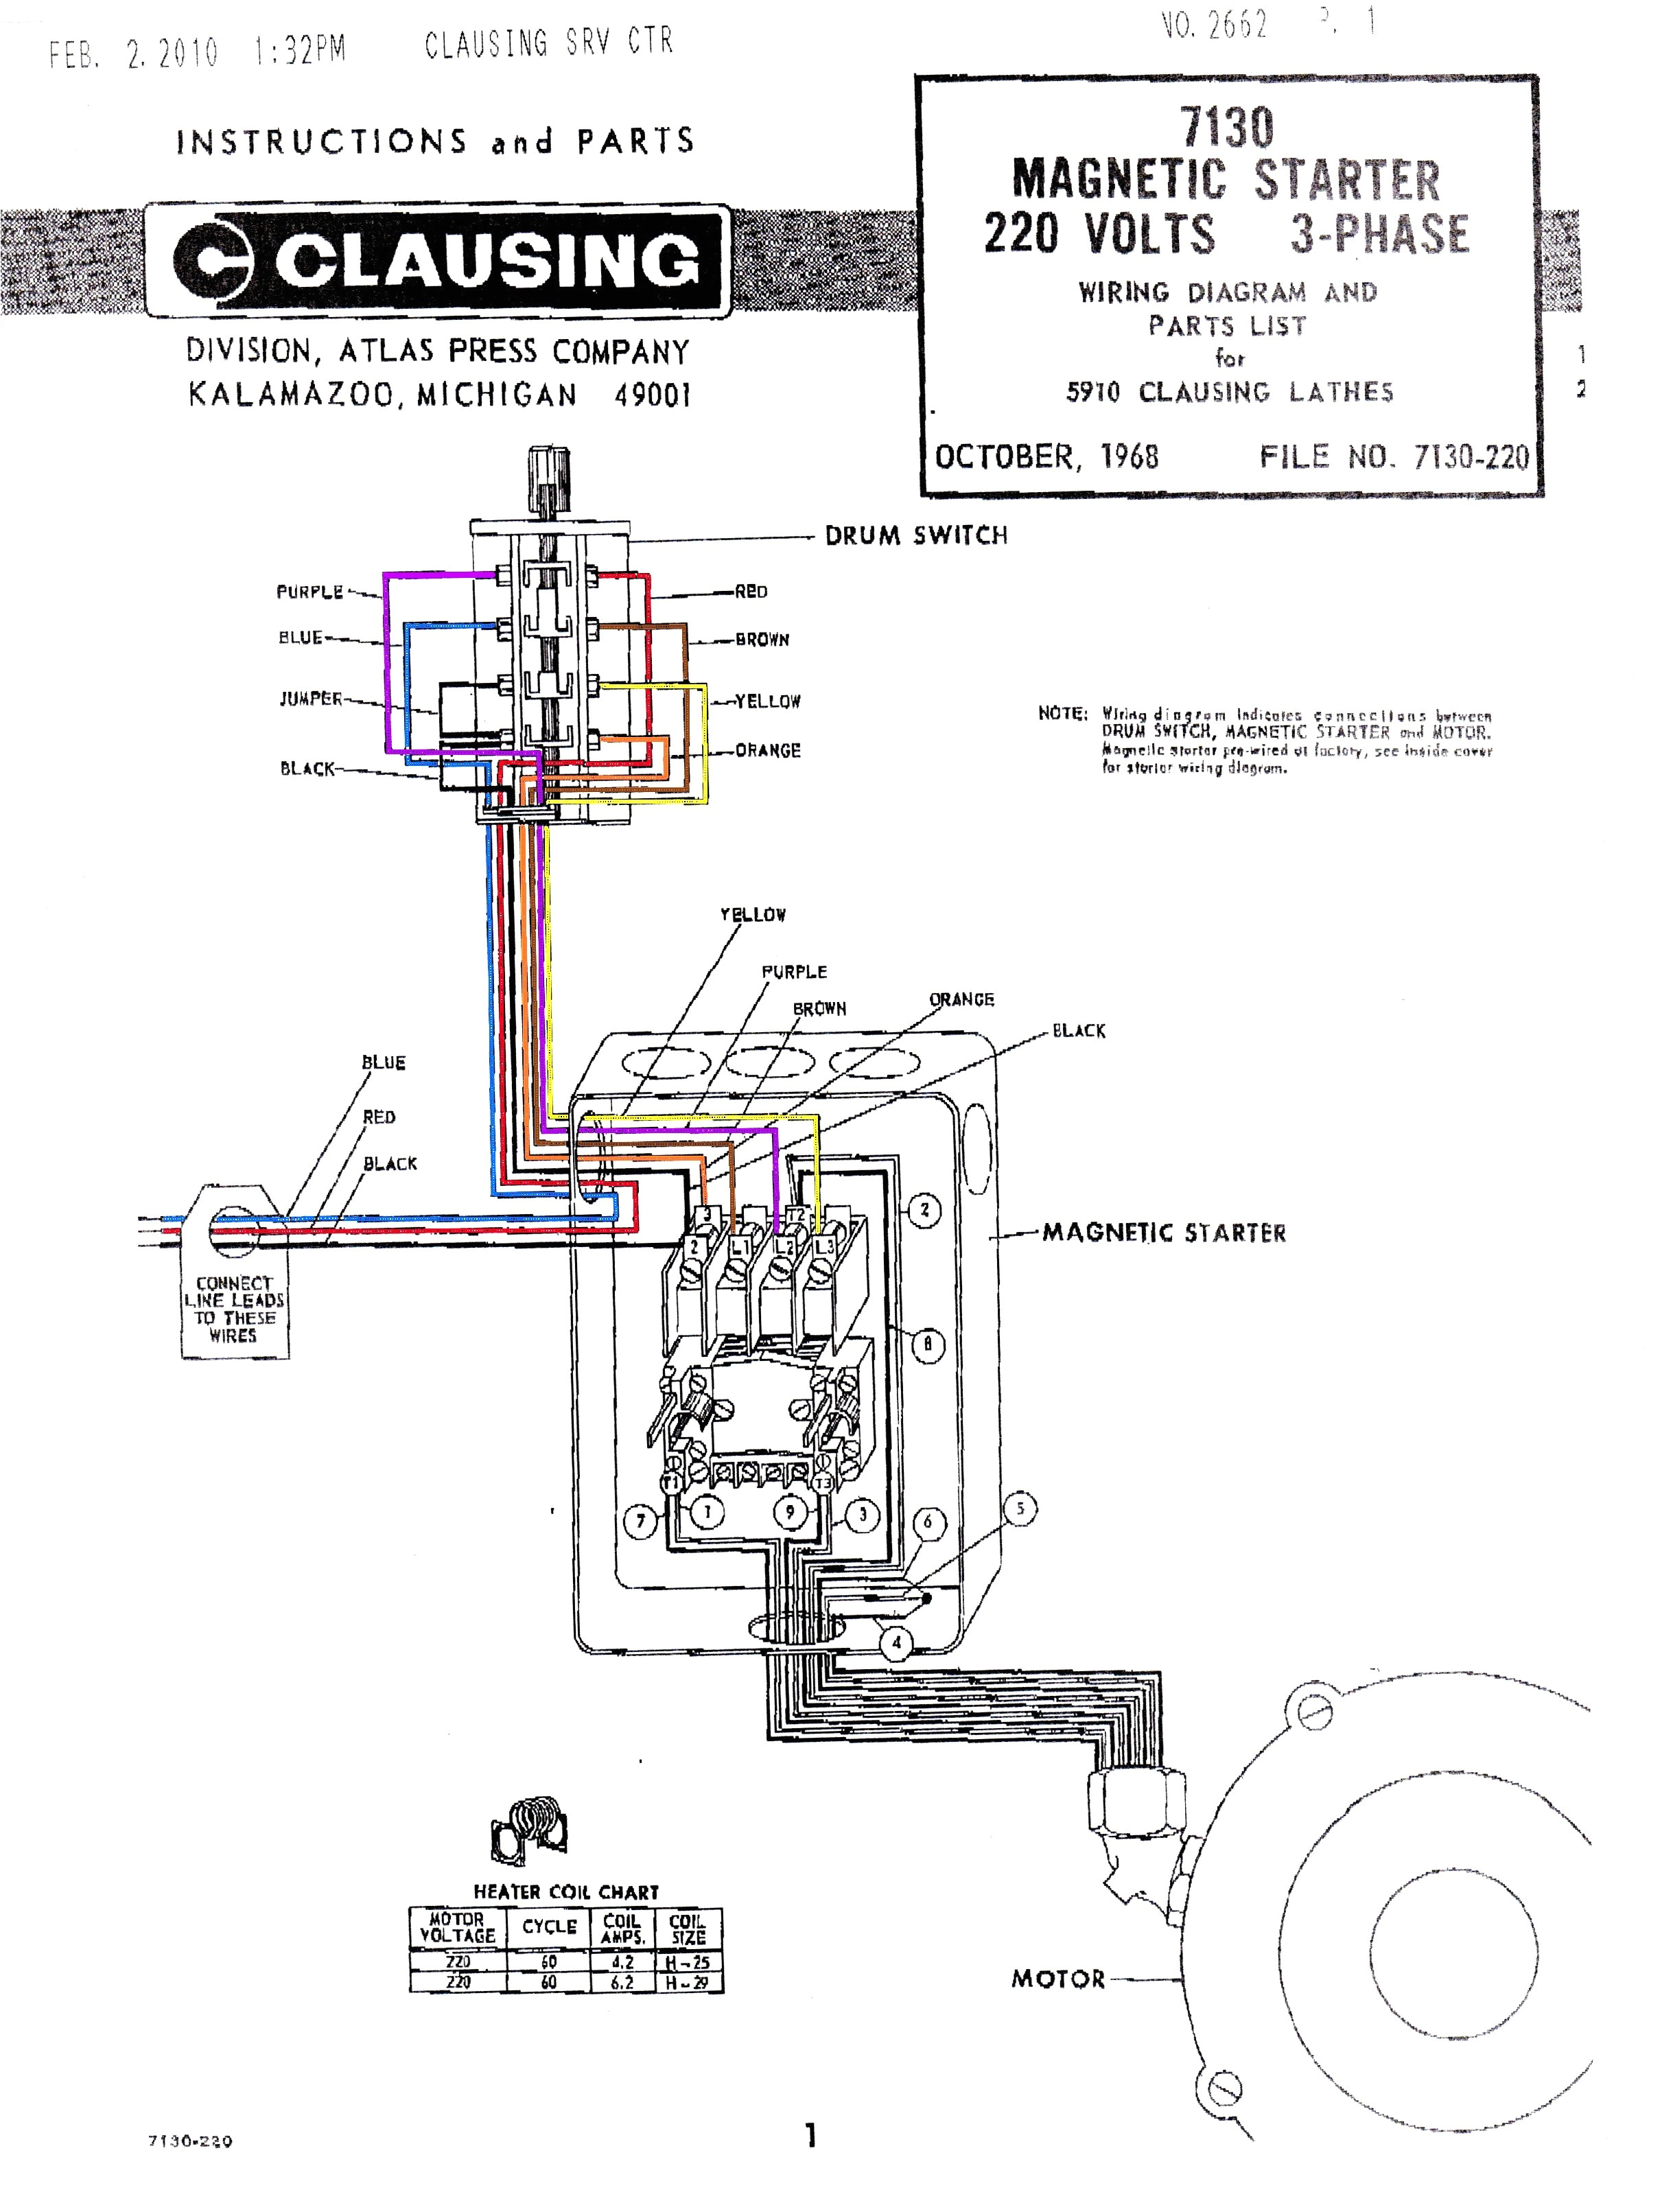 schematic plug wiring diagram dry wiring diagram show dry motor wiring diagram wiring diagram inside schematic